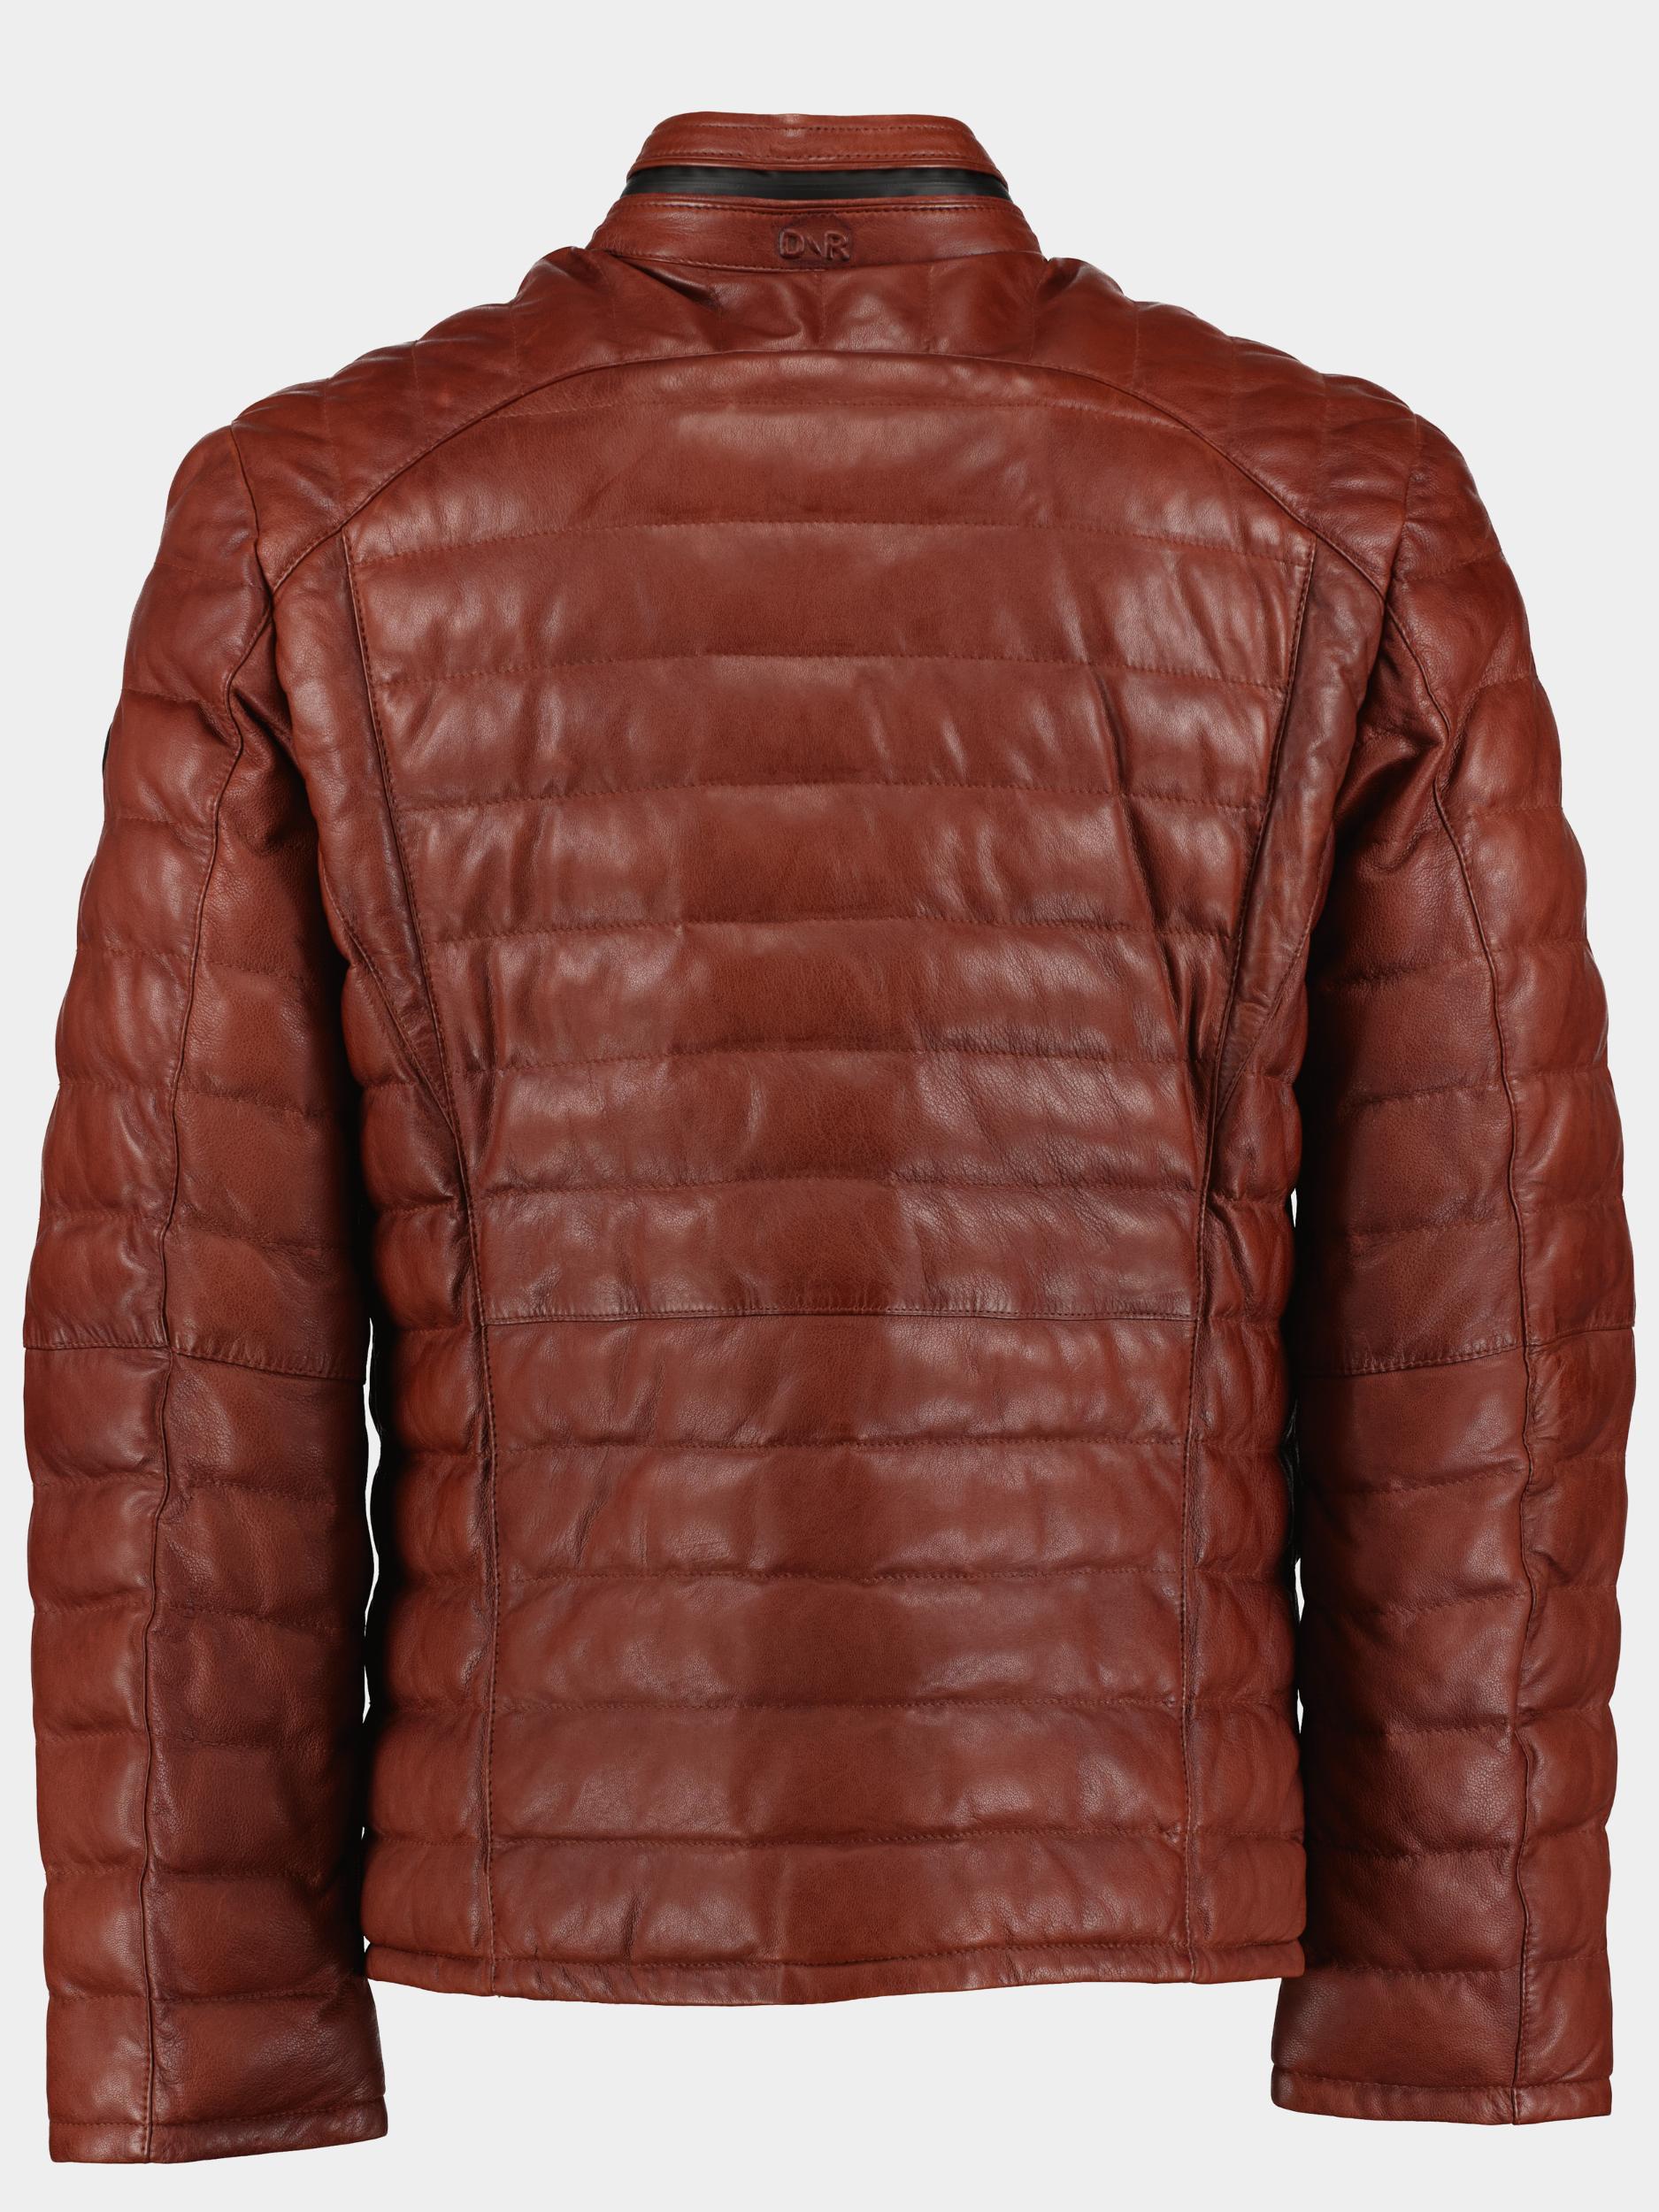 Donders 1860 Lederen jack Bruin Leather Jacket 52497/411